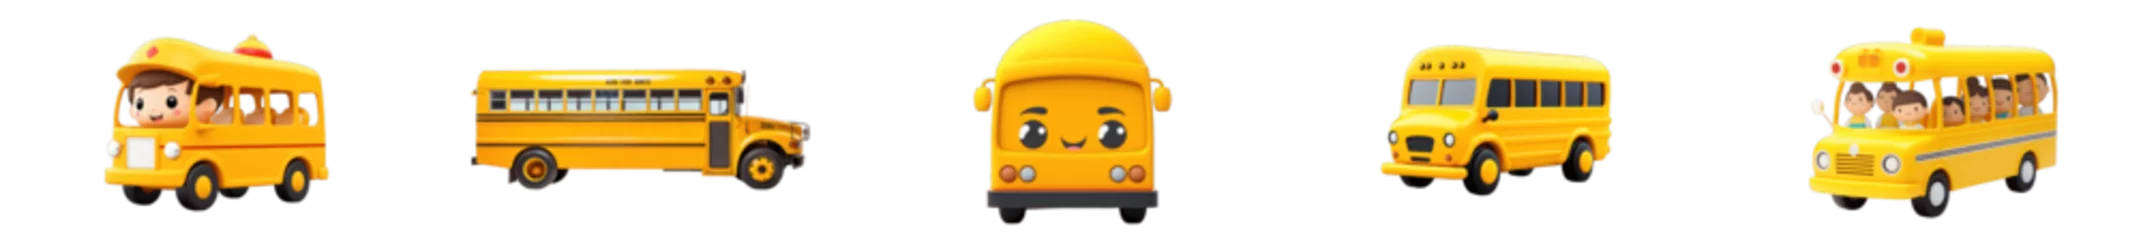 Gordijnen set of funny cartoon yellow school bus 3d character © Generative Professor